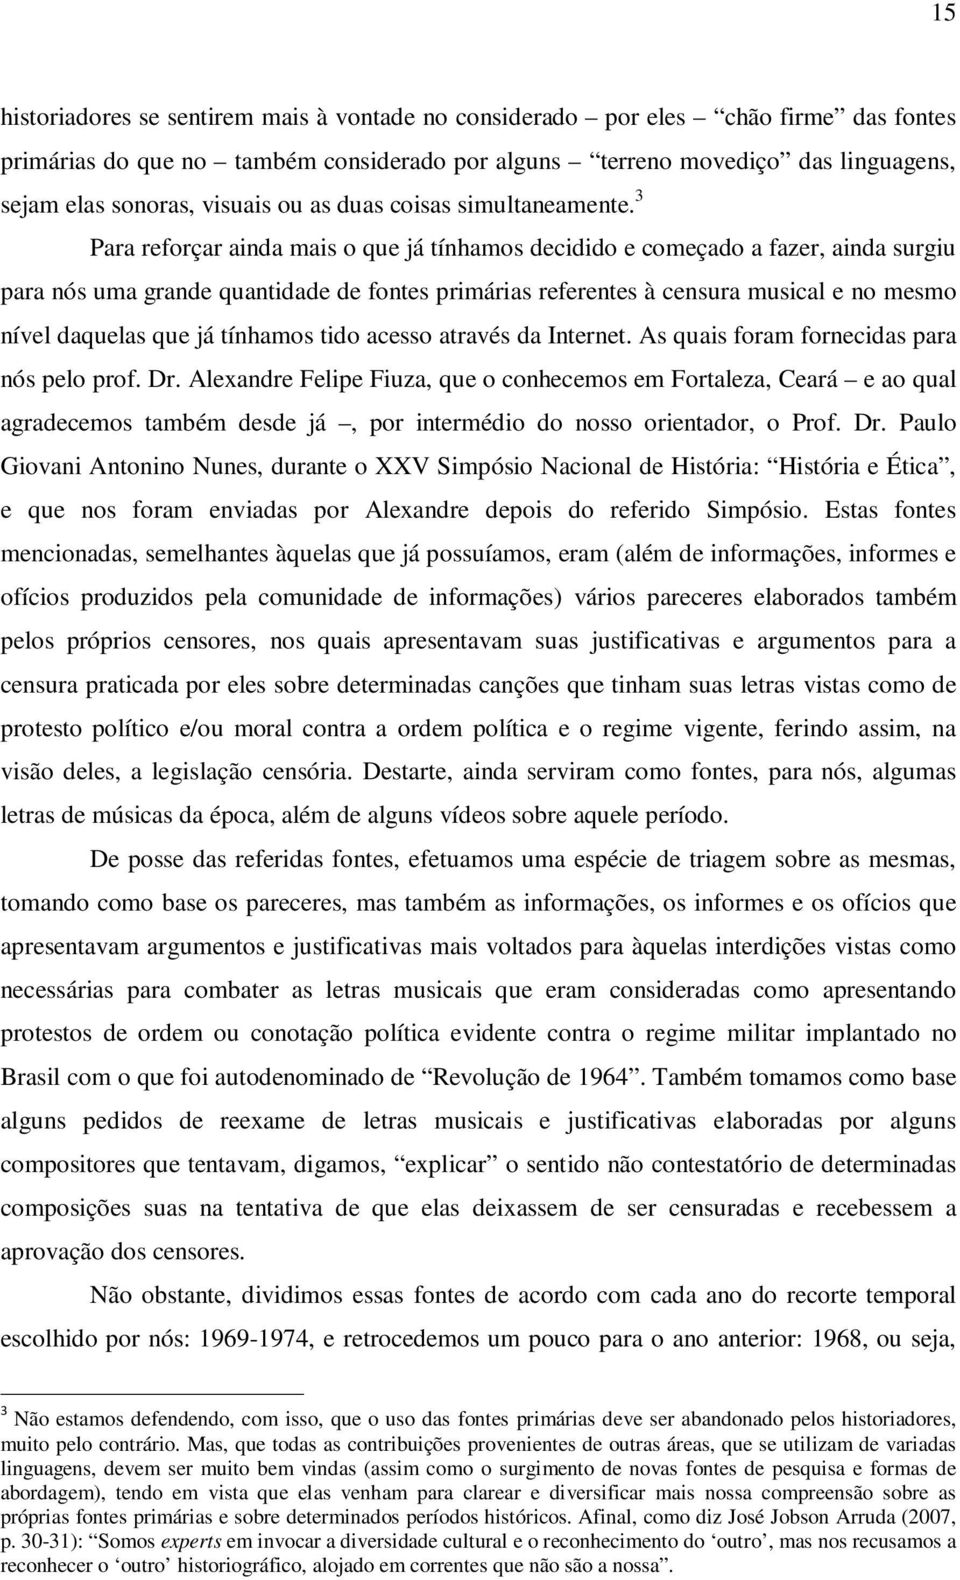 Super Partituras - Disfarça E Chora v.3 (Cartola, Dalmo Castelo